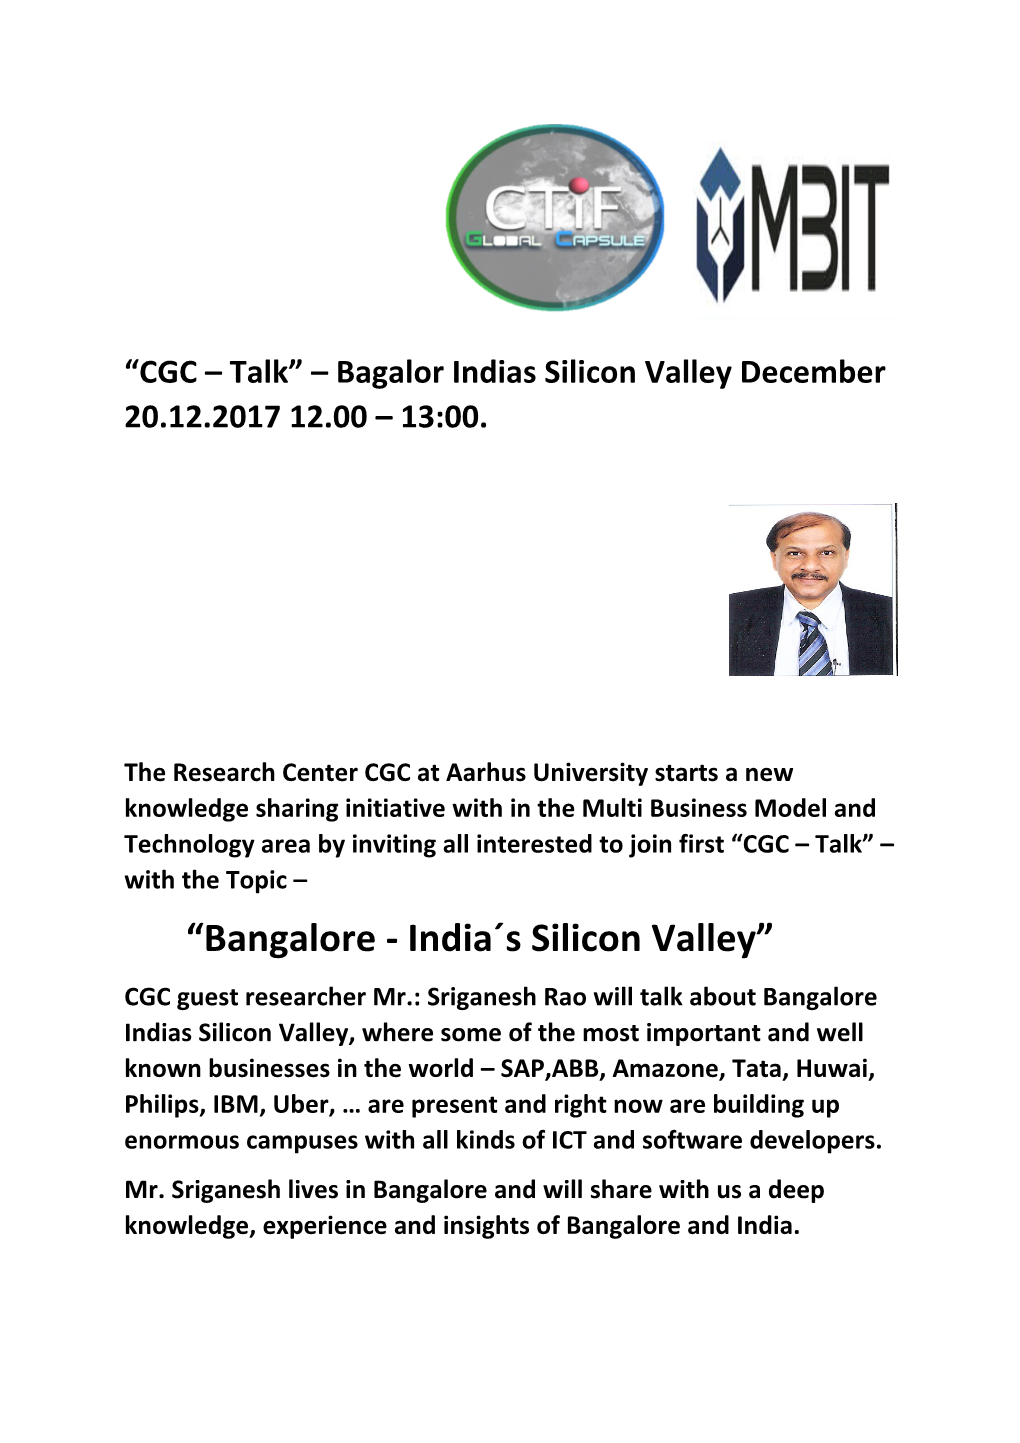 CGC Talk Bagalorindias Silicon Valley December 20.12.2017 12.00 13:00